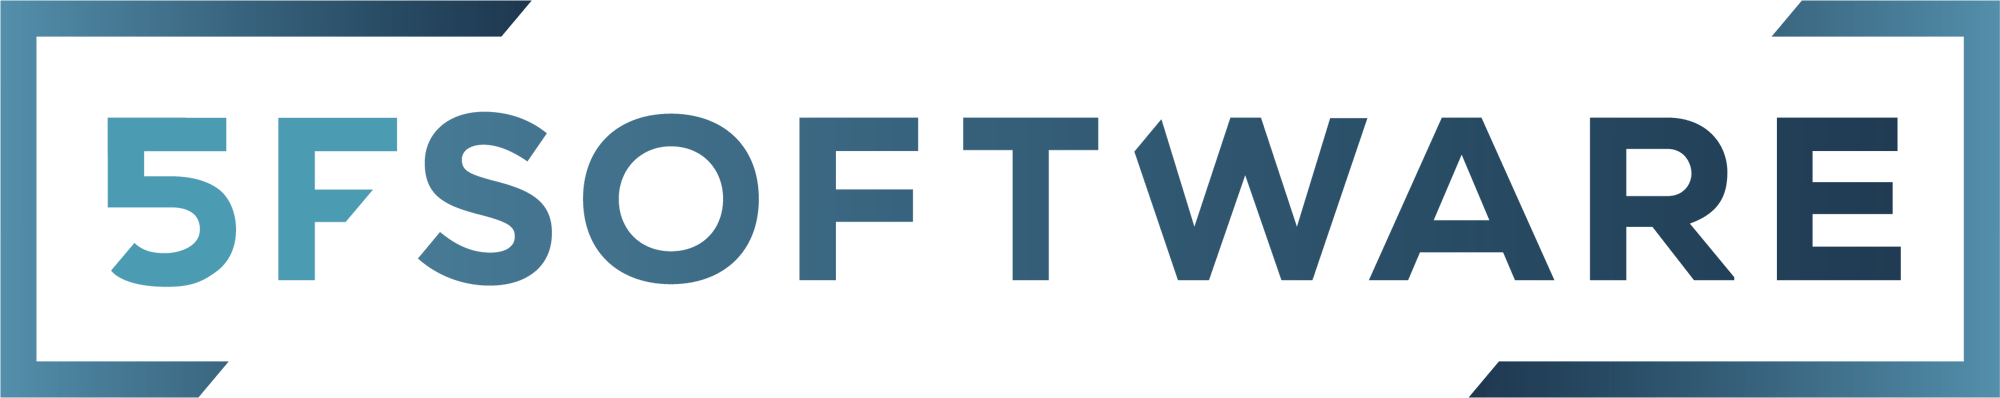 5fsoftware_logo-claim_201910_transparent